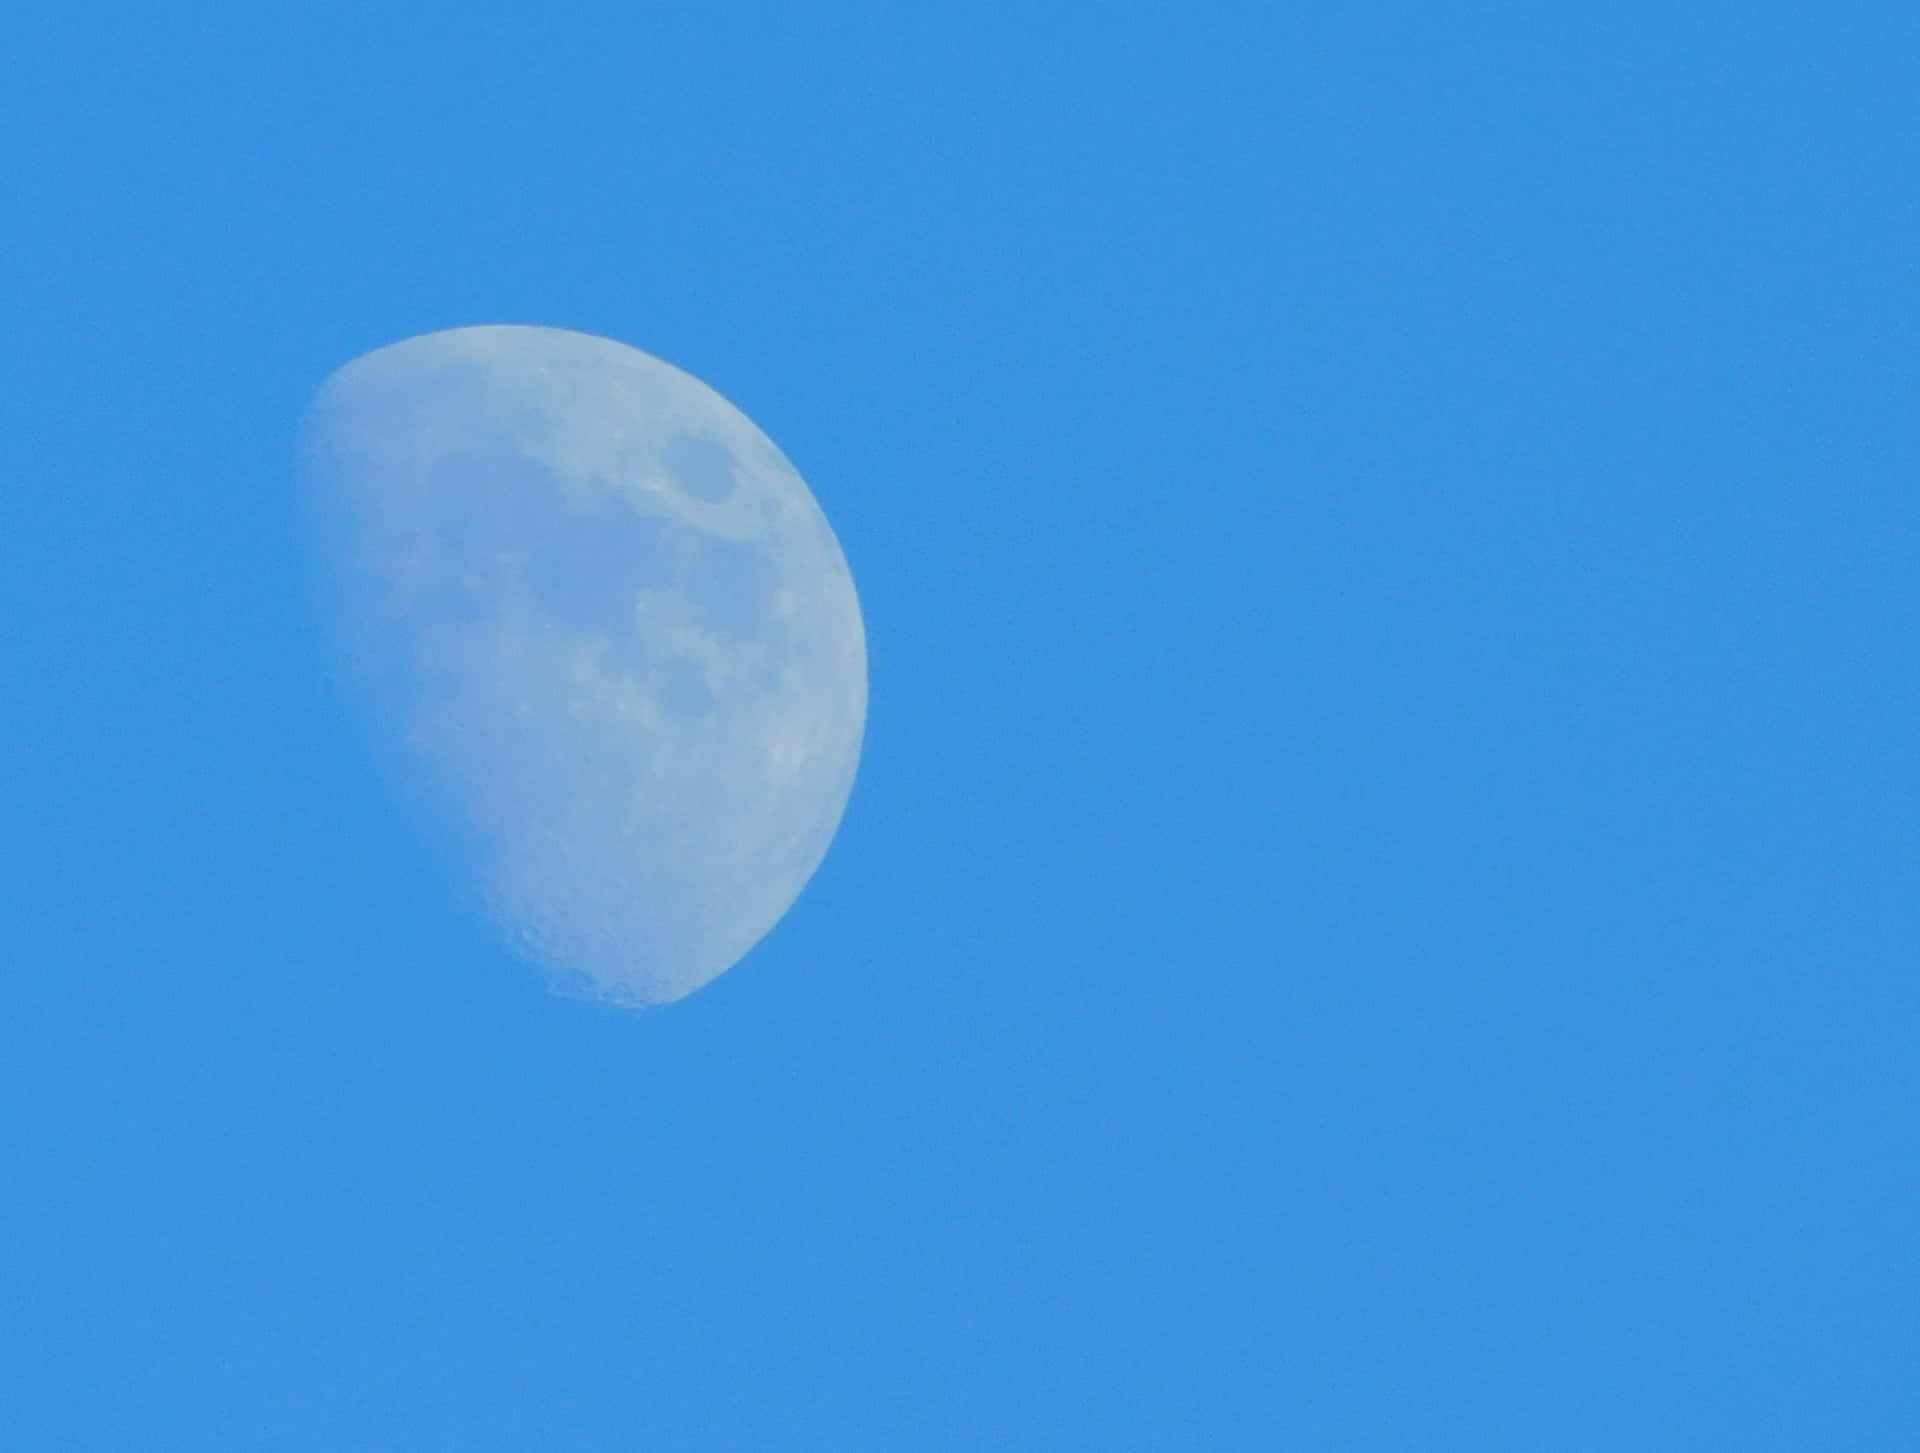 Laluna Si Vede Attraverso Un Cielo Limpido E Blu